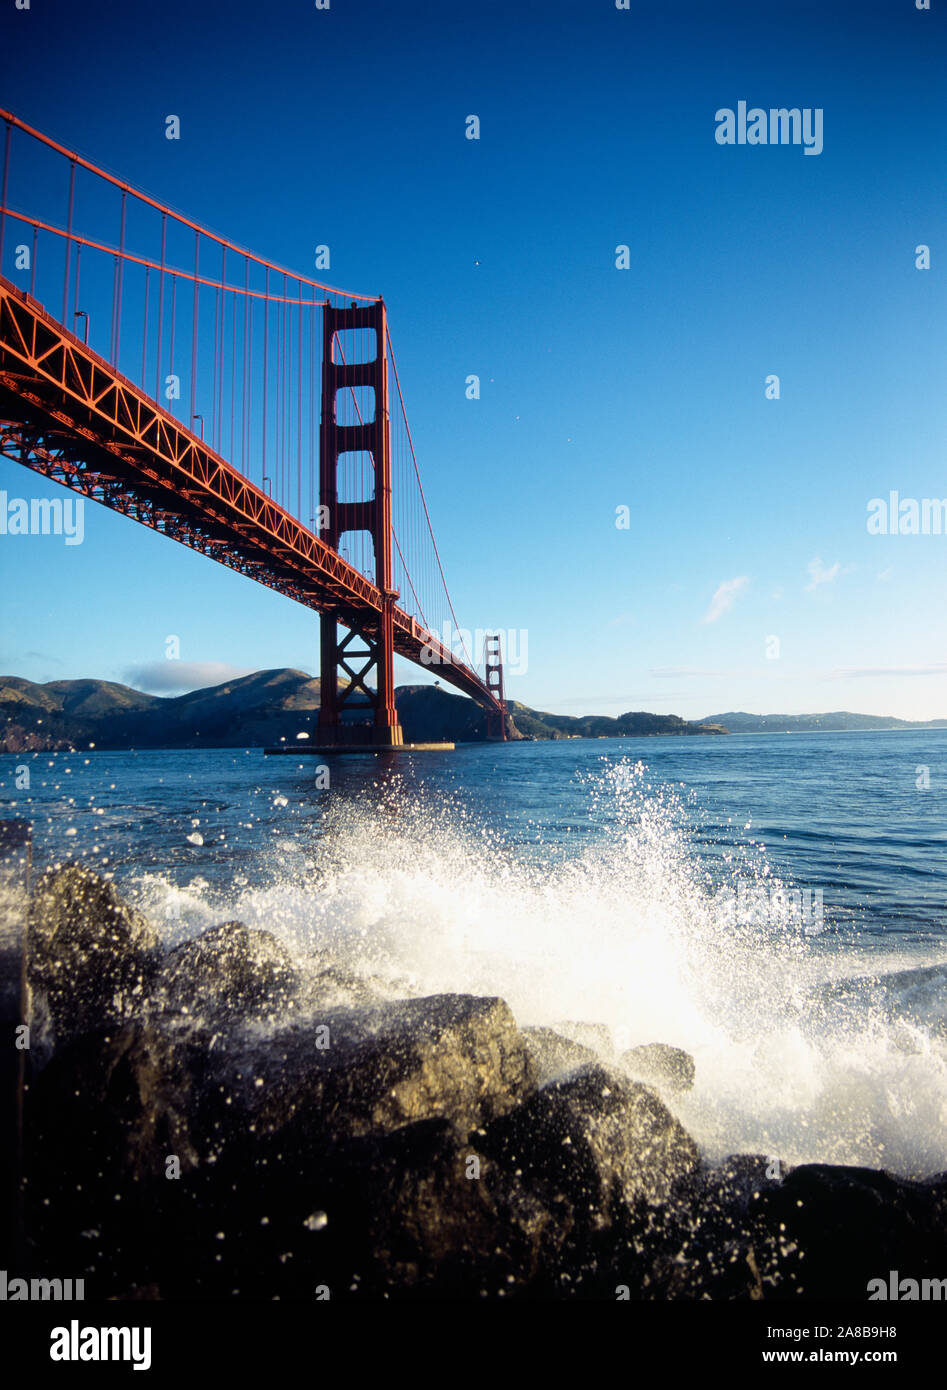 Low Angle View einer Brücke über das Meer, die Golden Gate Bridge, San Francisco, Kalifornien, USA Stockfoto